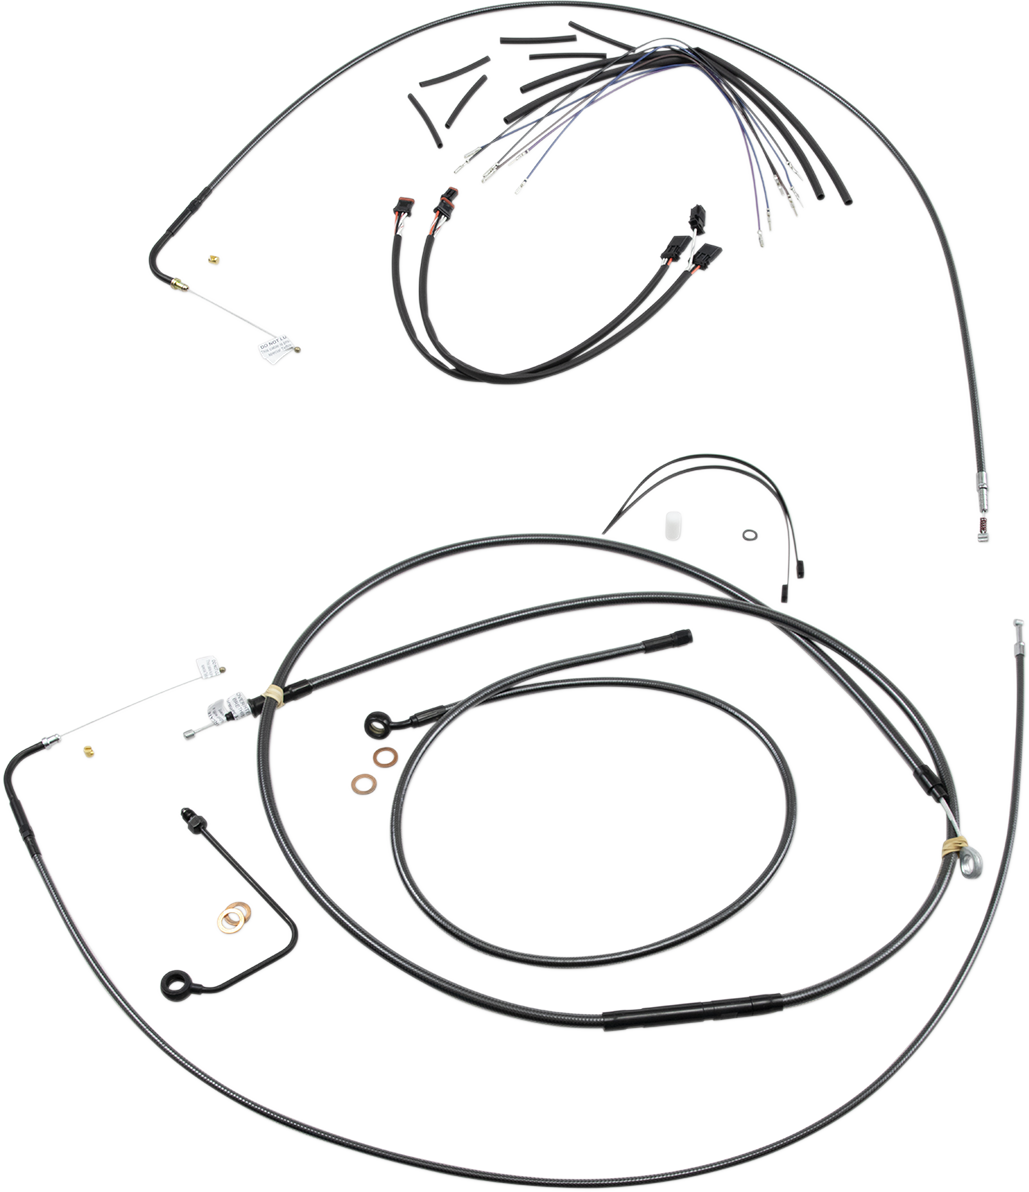 Black Pearlâ„¢ Control Cable Kit3632625017